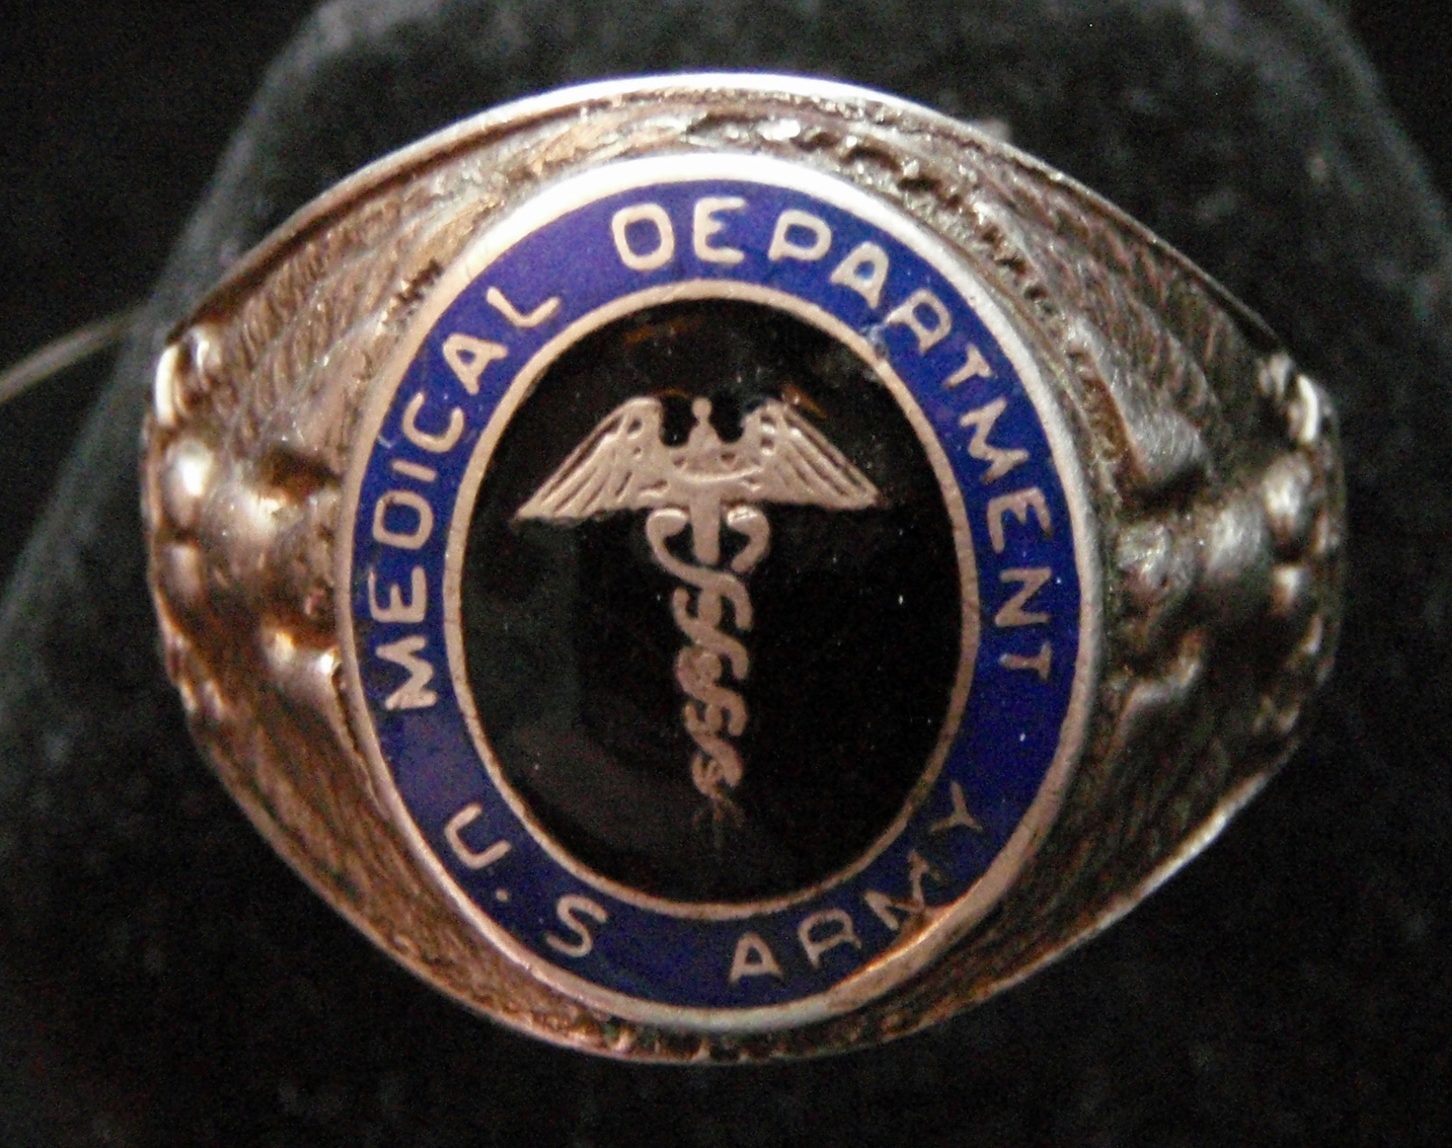 Кольцо военнослужащего медицинского департамента, изготовленное с применением цветной горячей эмали.